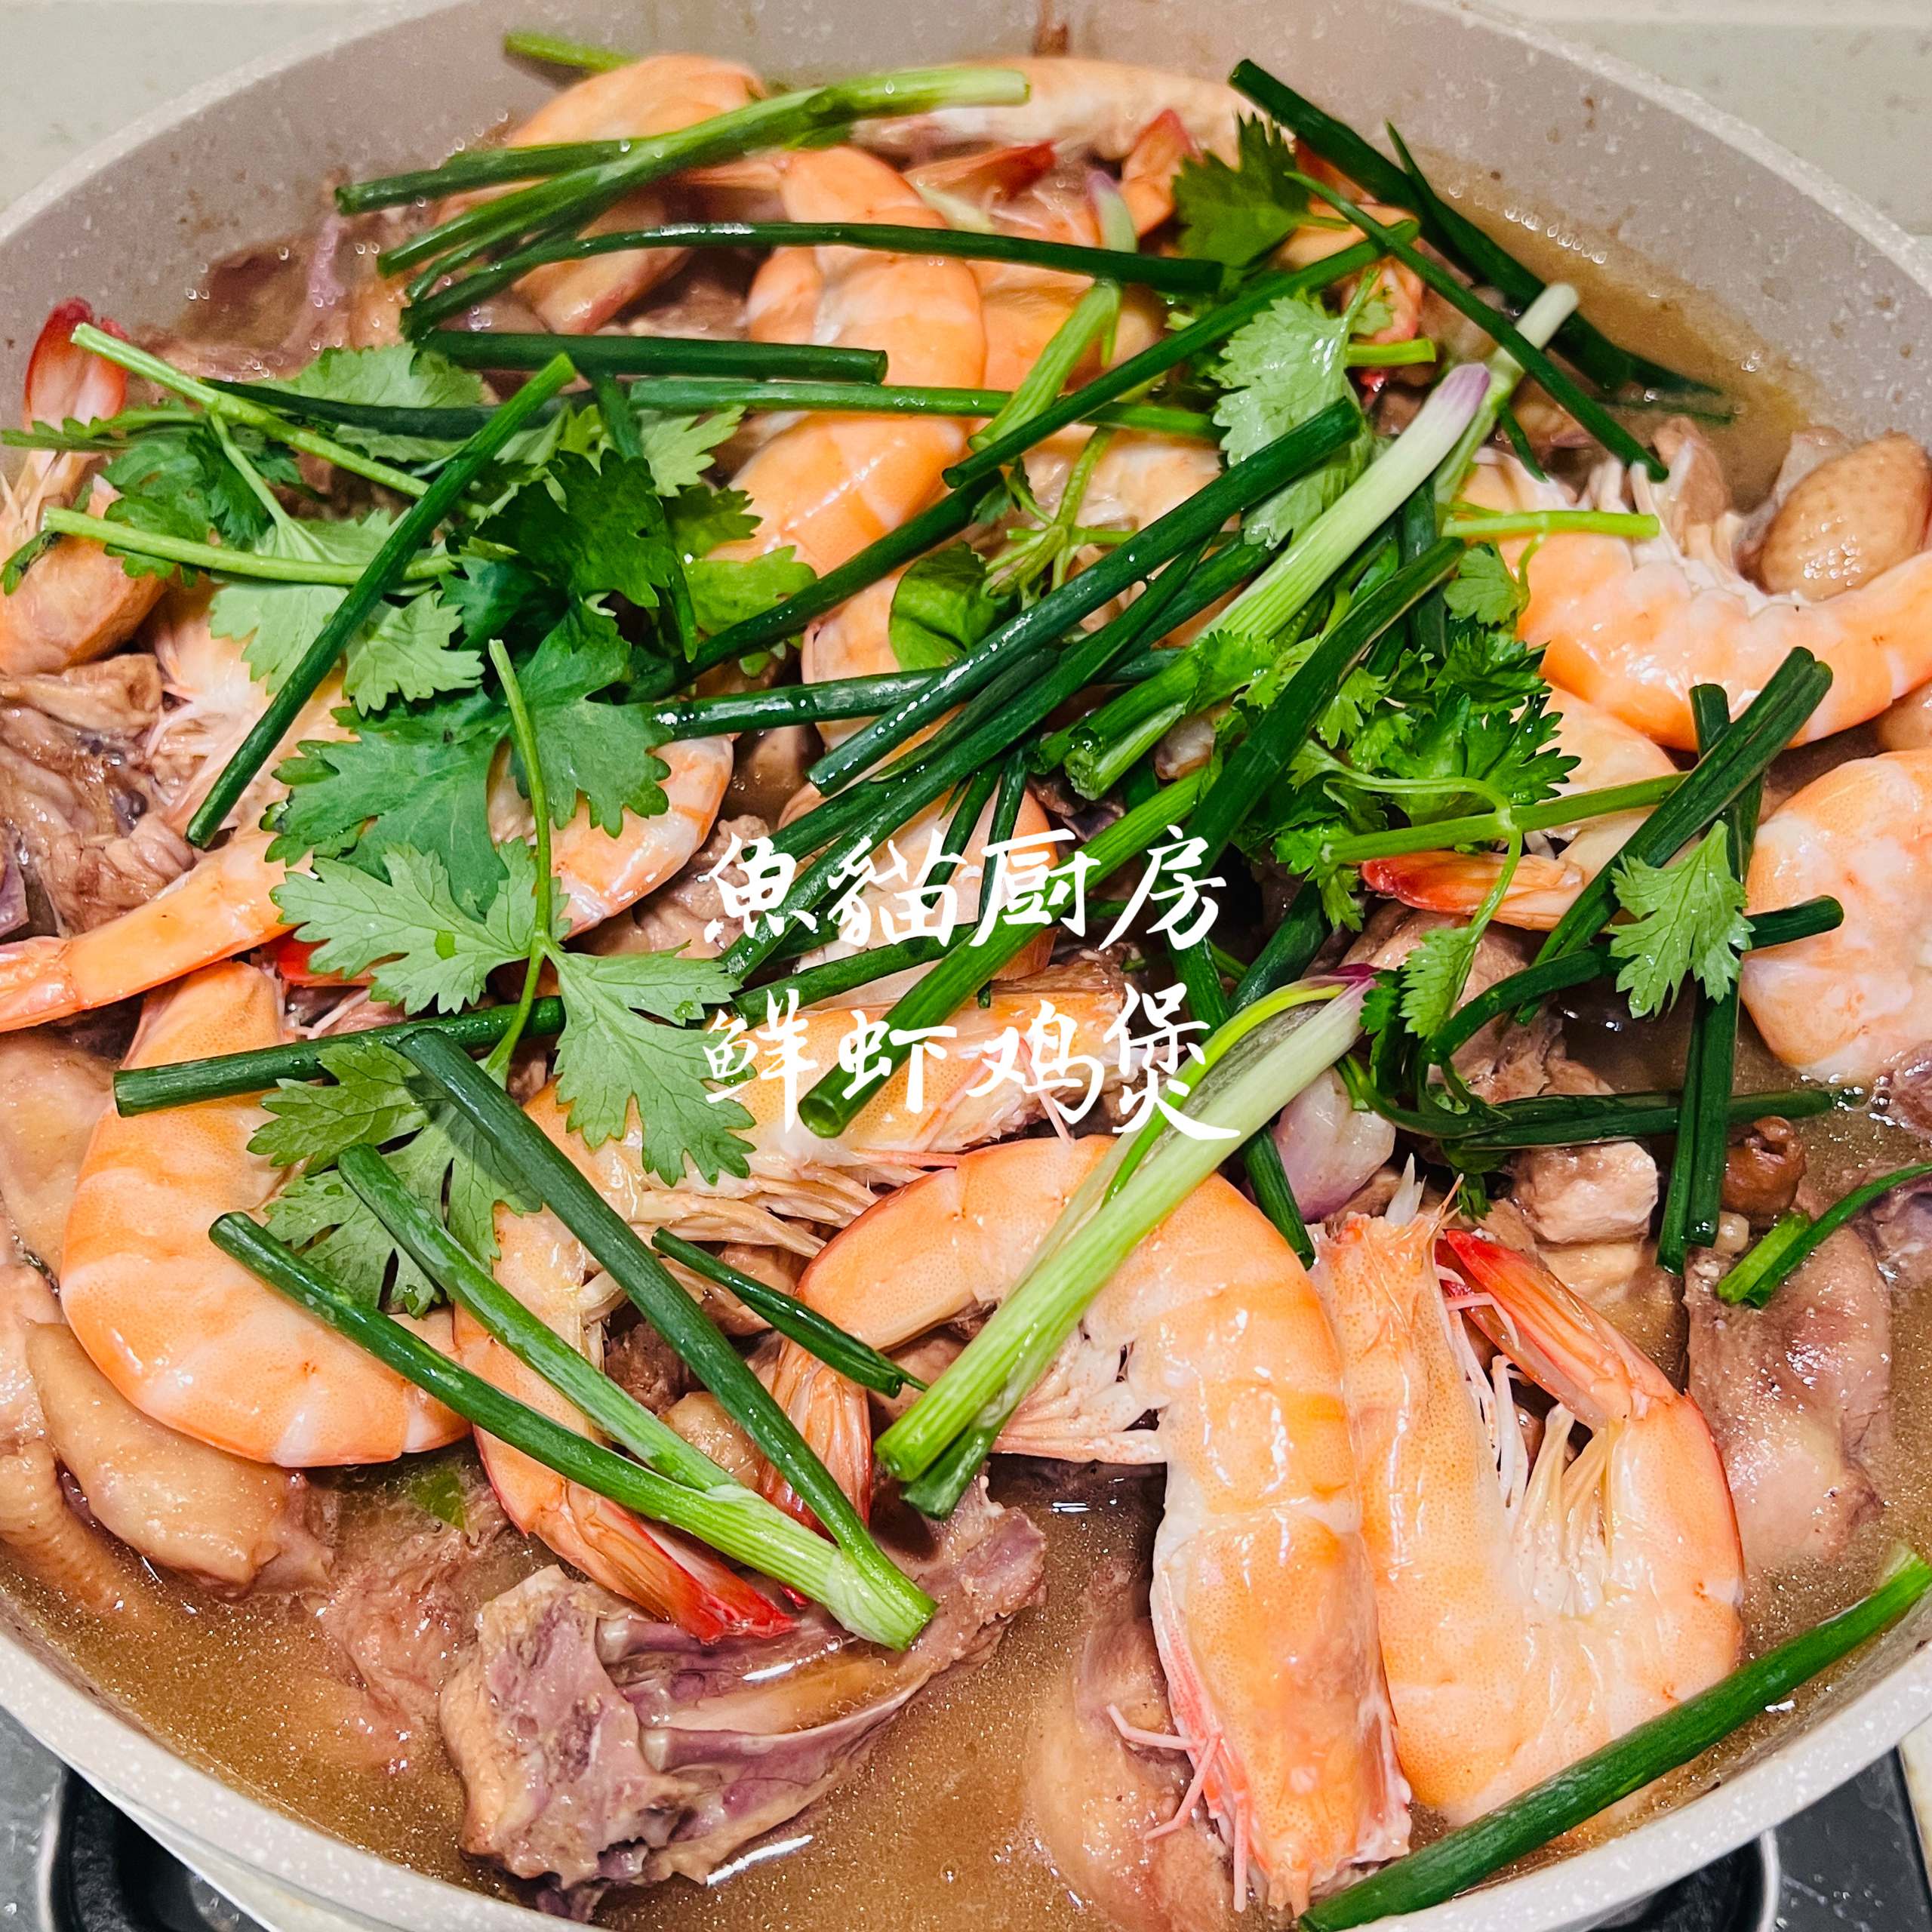 🐔鲜虾鸡煲🐔—简单粗暴的宴客大菜❗️只需一个煲/平底锅+15分钟烹煮时间❗️